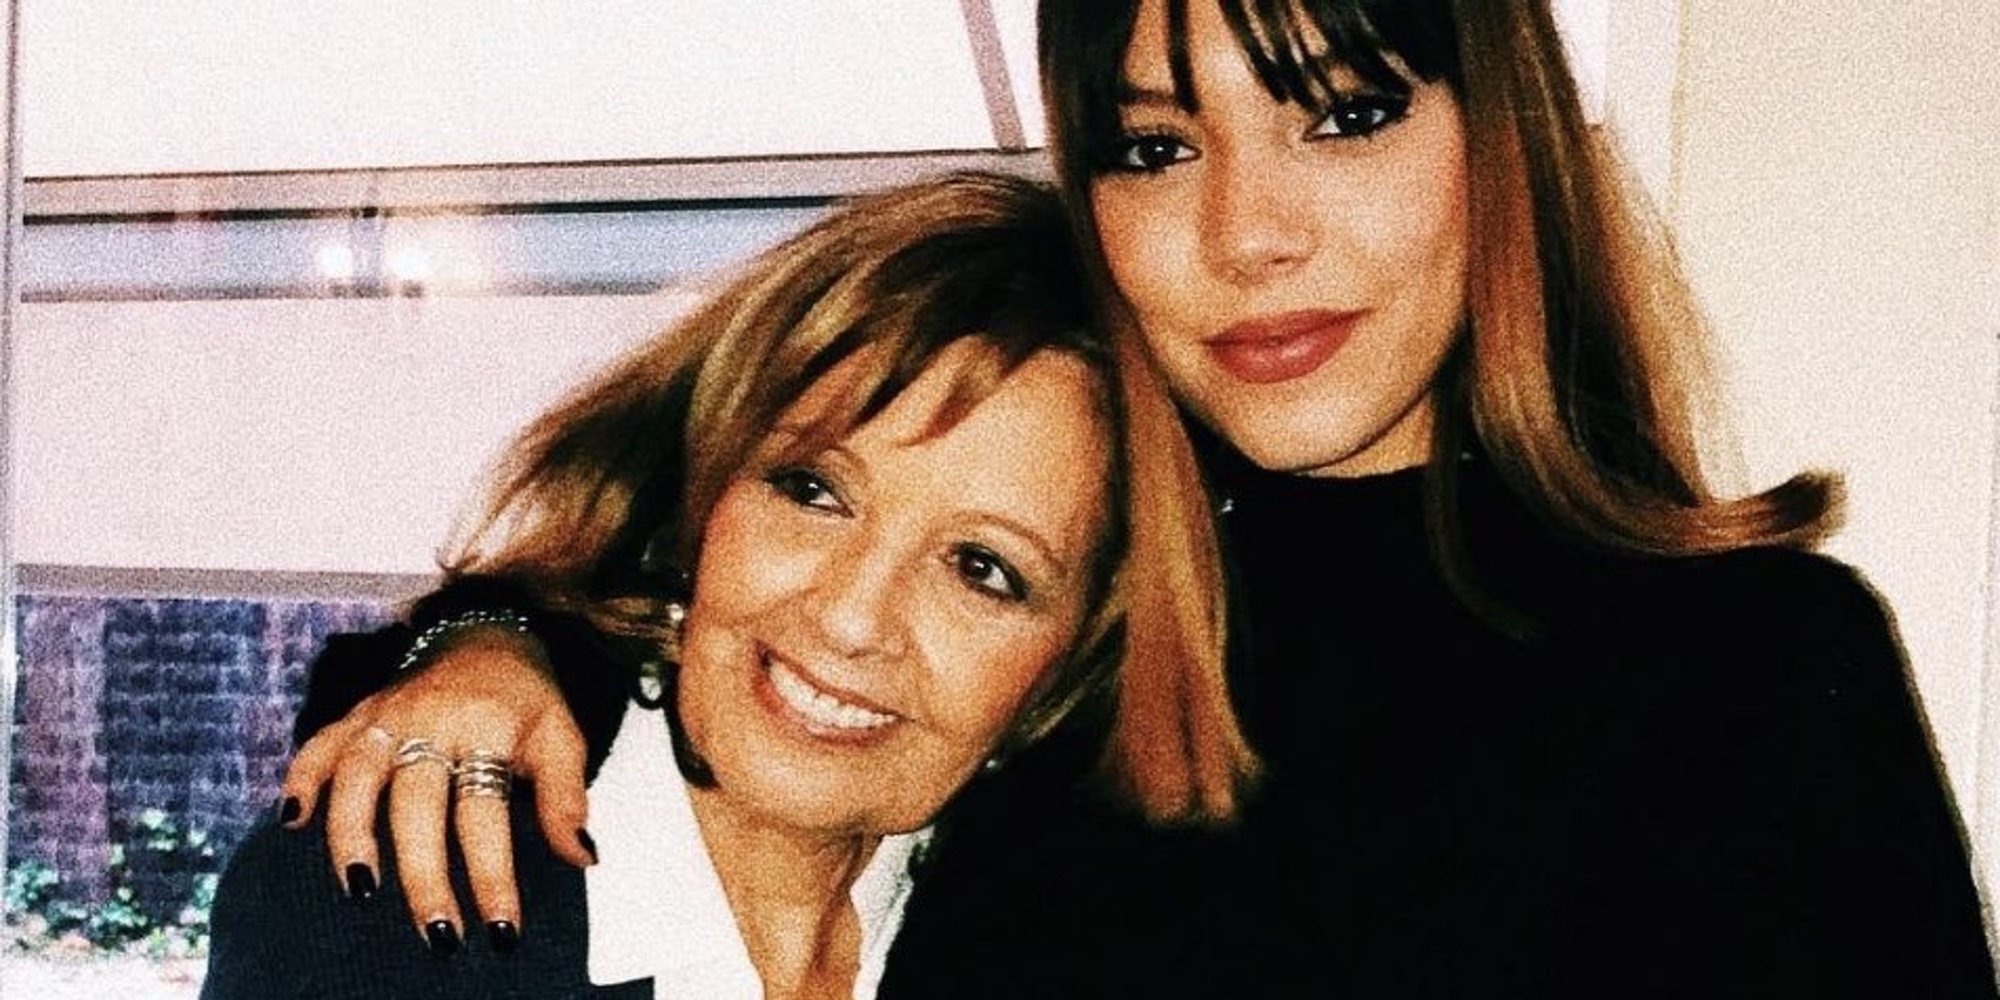 María Teresa Campos revela que ha grabado un programa con su nieta Alejandra Rubio y lanza una pulla a Mediaset